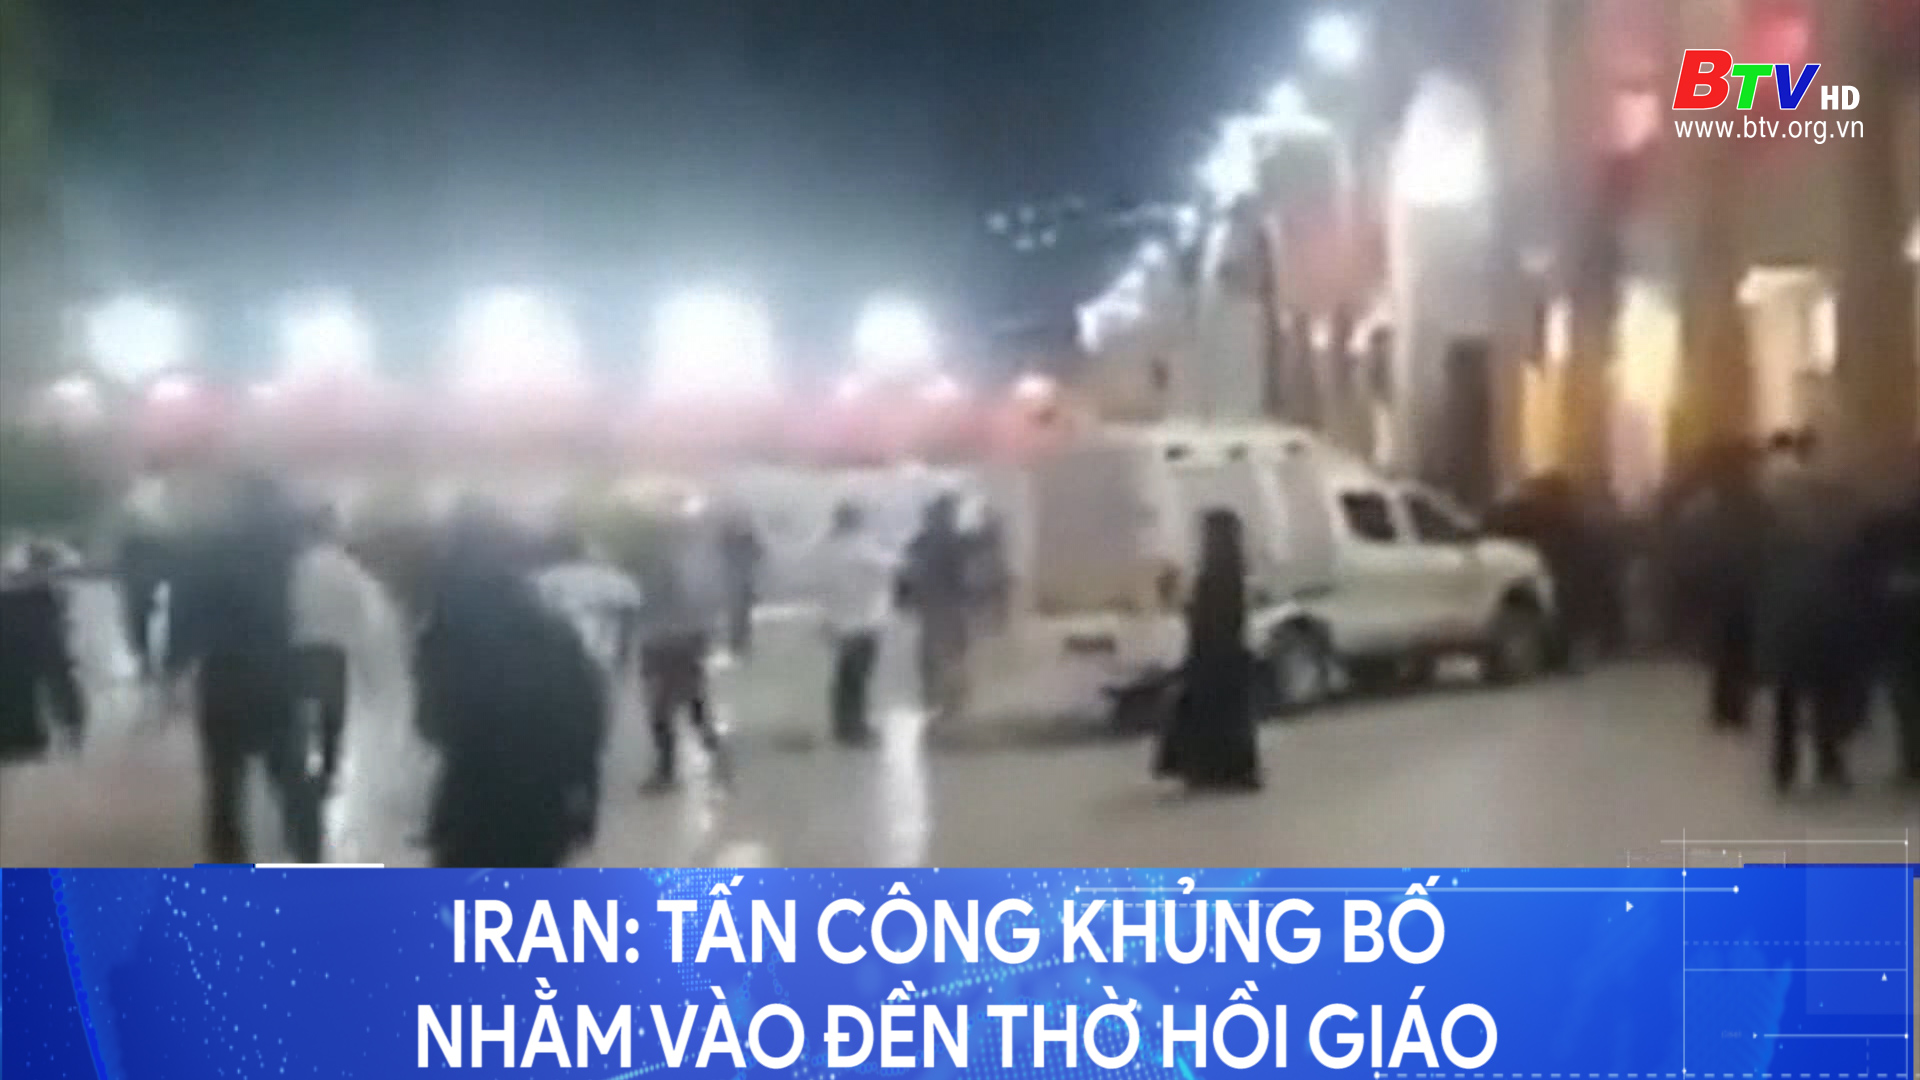 Iran: tấn công khủng bố nhằm vào đền thờ hồi giáo	